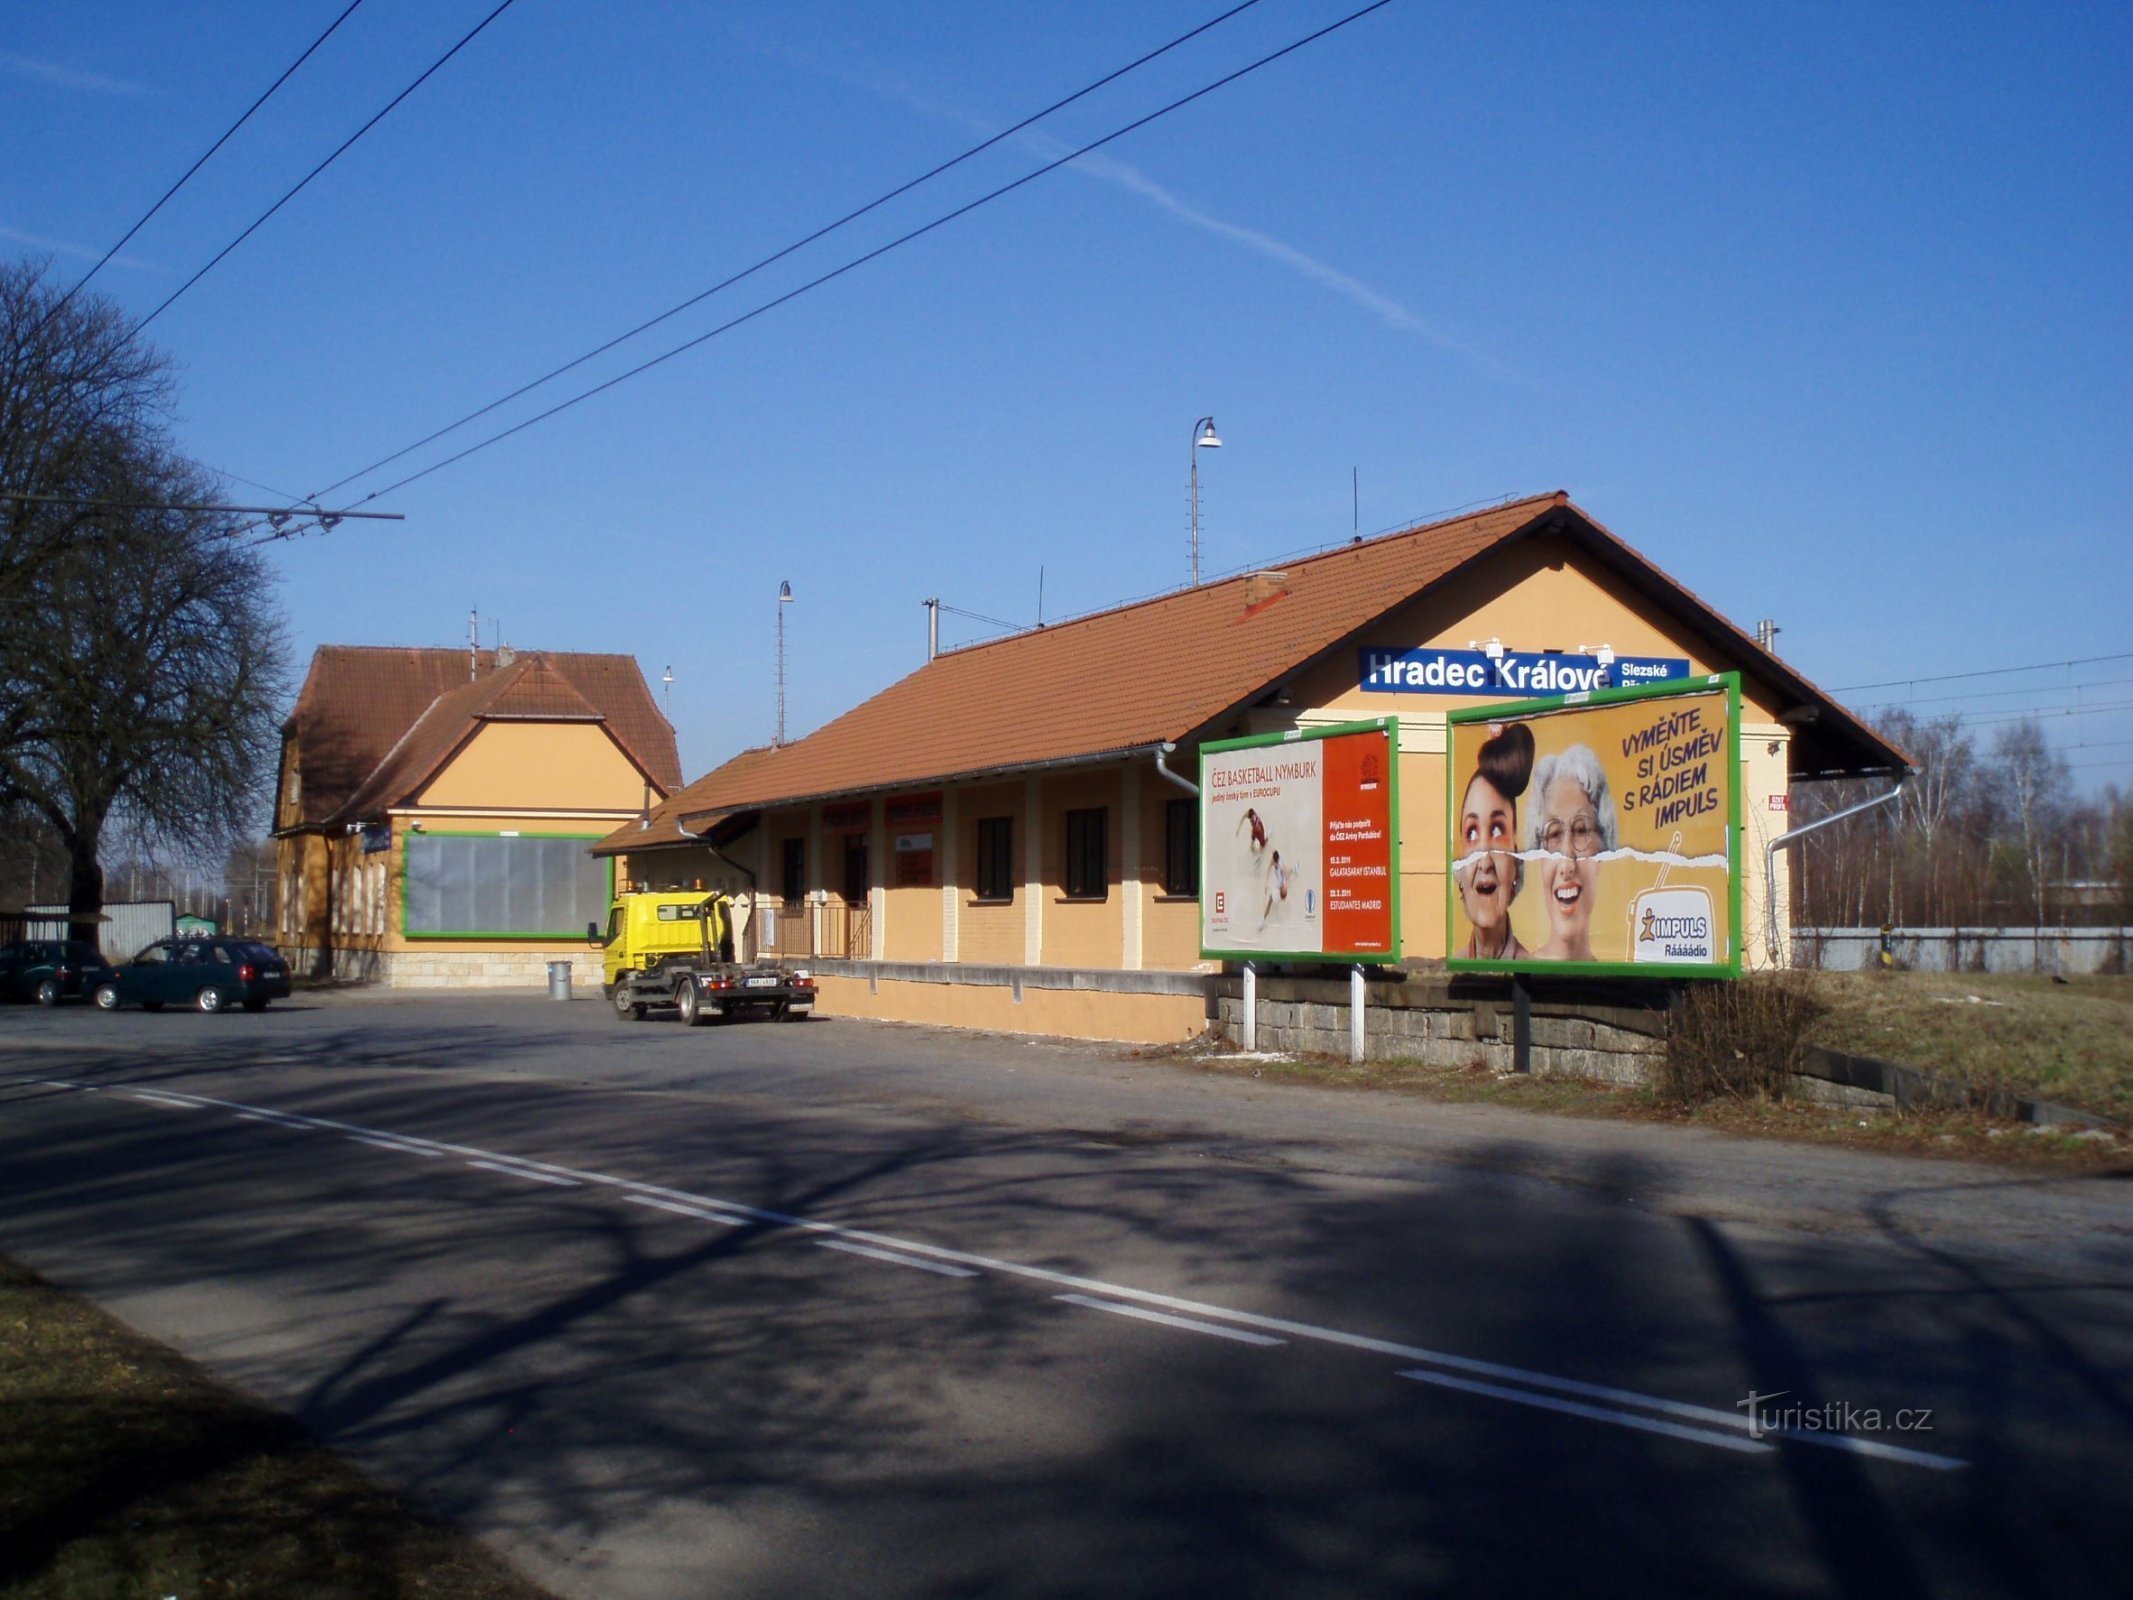 Railway Station in Silesian Suburbs (Hradec Králové, 24.3.2011)